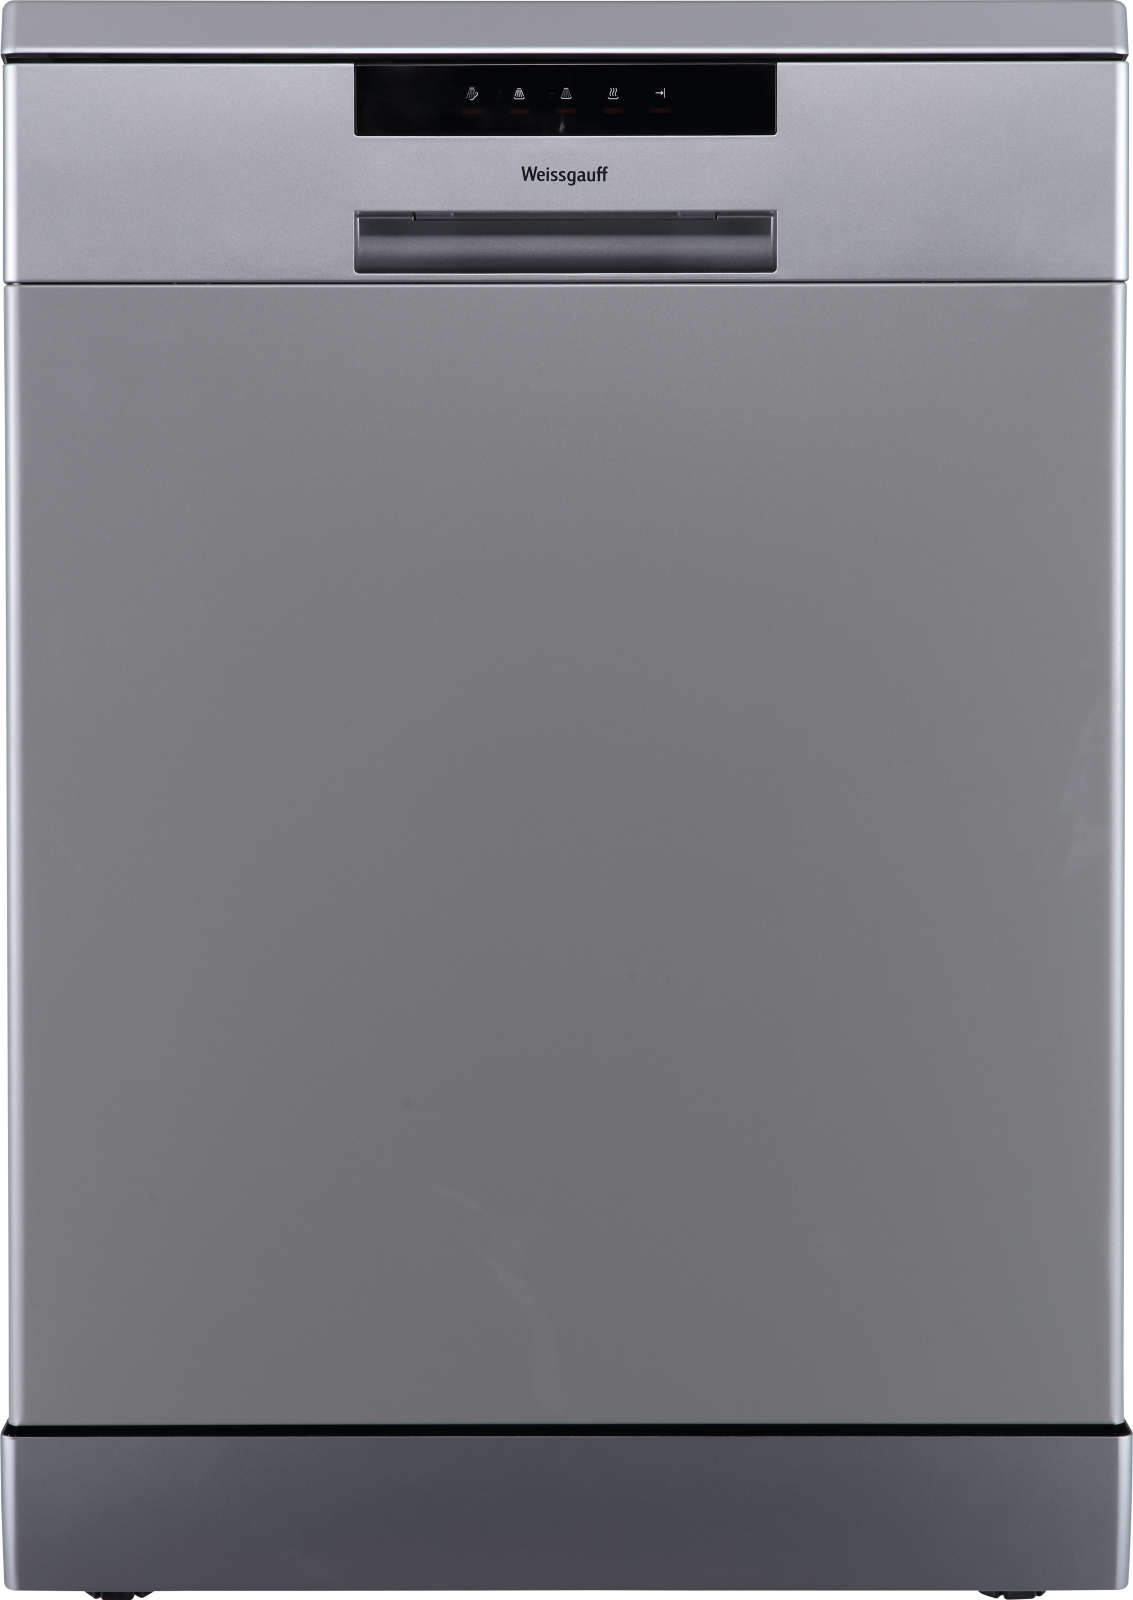 Посудомоечная машина Weissgauff DW 6013 Inox серебристый посудомоечная машина weissgauff tdw 5057 d white